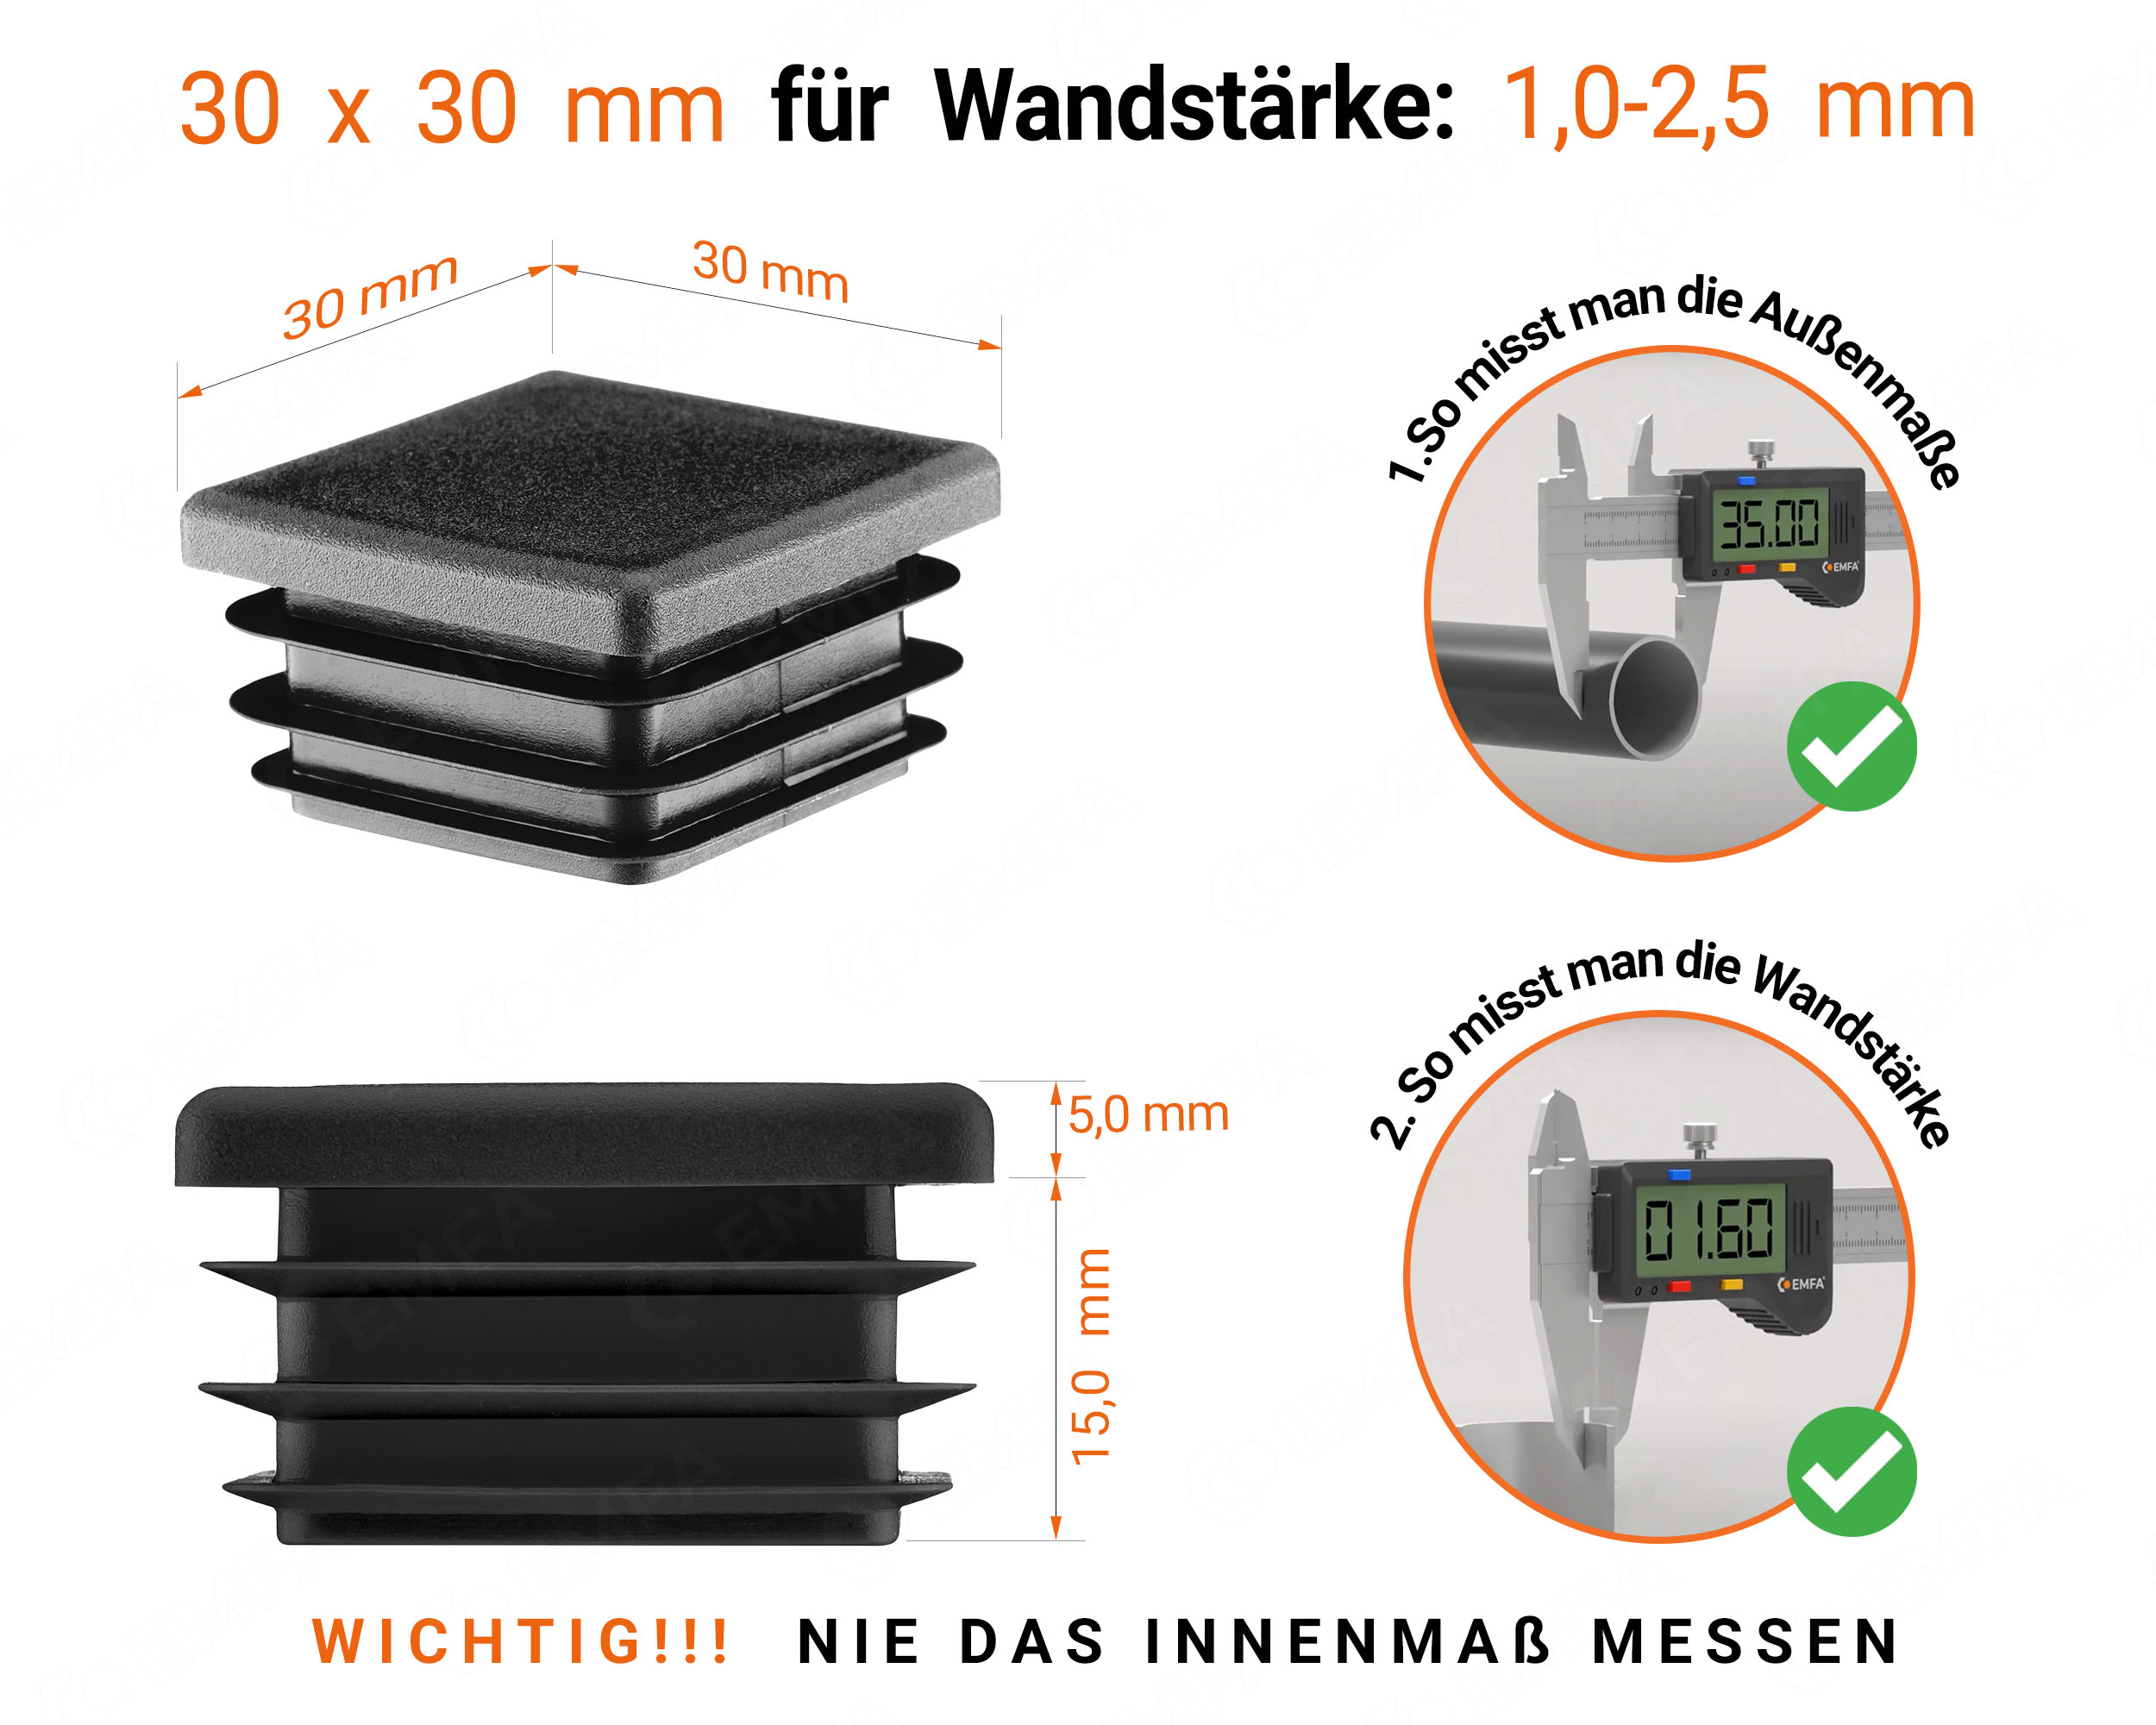 Schwarze Endkappe für Vierkantrohre in der Größe 30x30 mm mit technischen Abmessungen und Anleitung für korrekte Messung